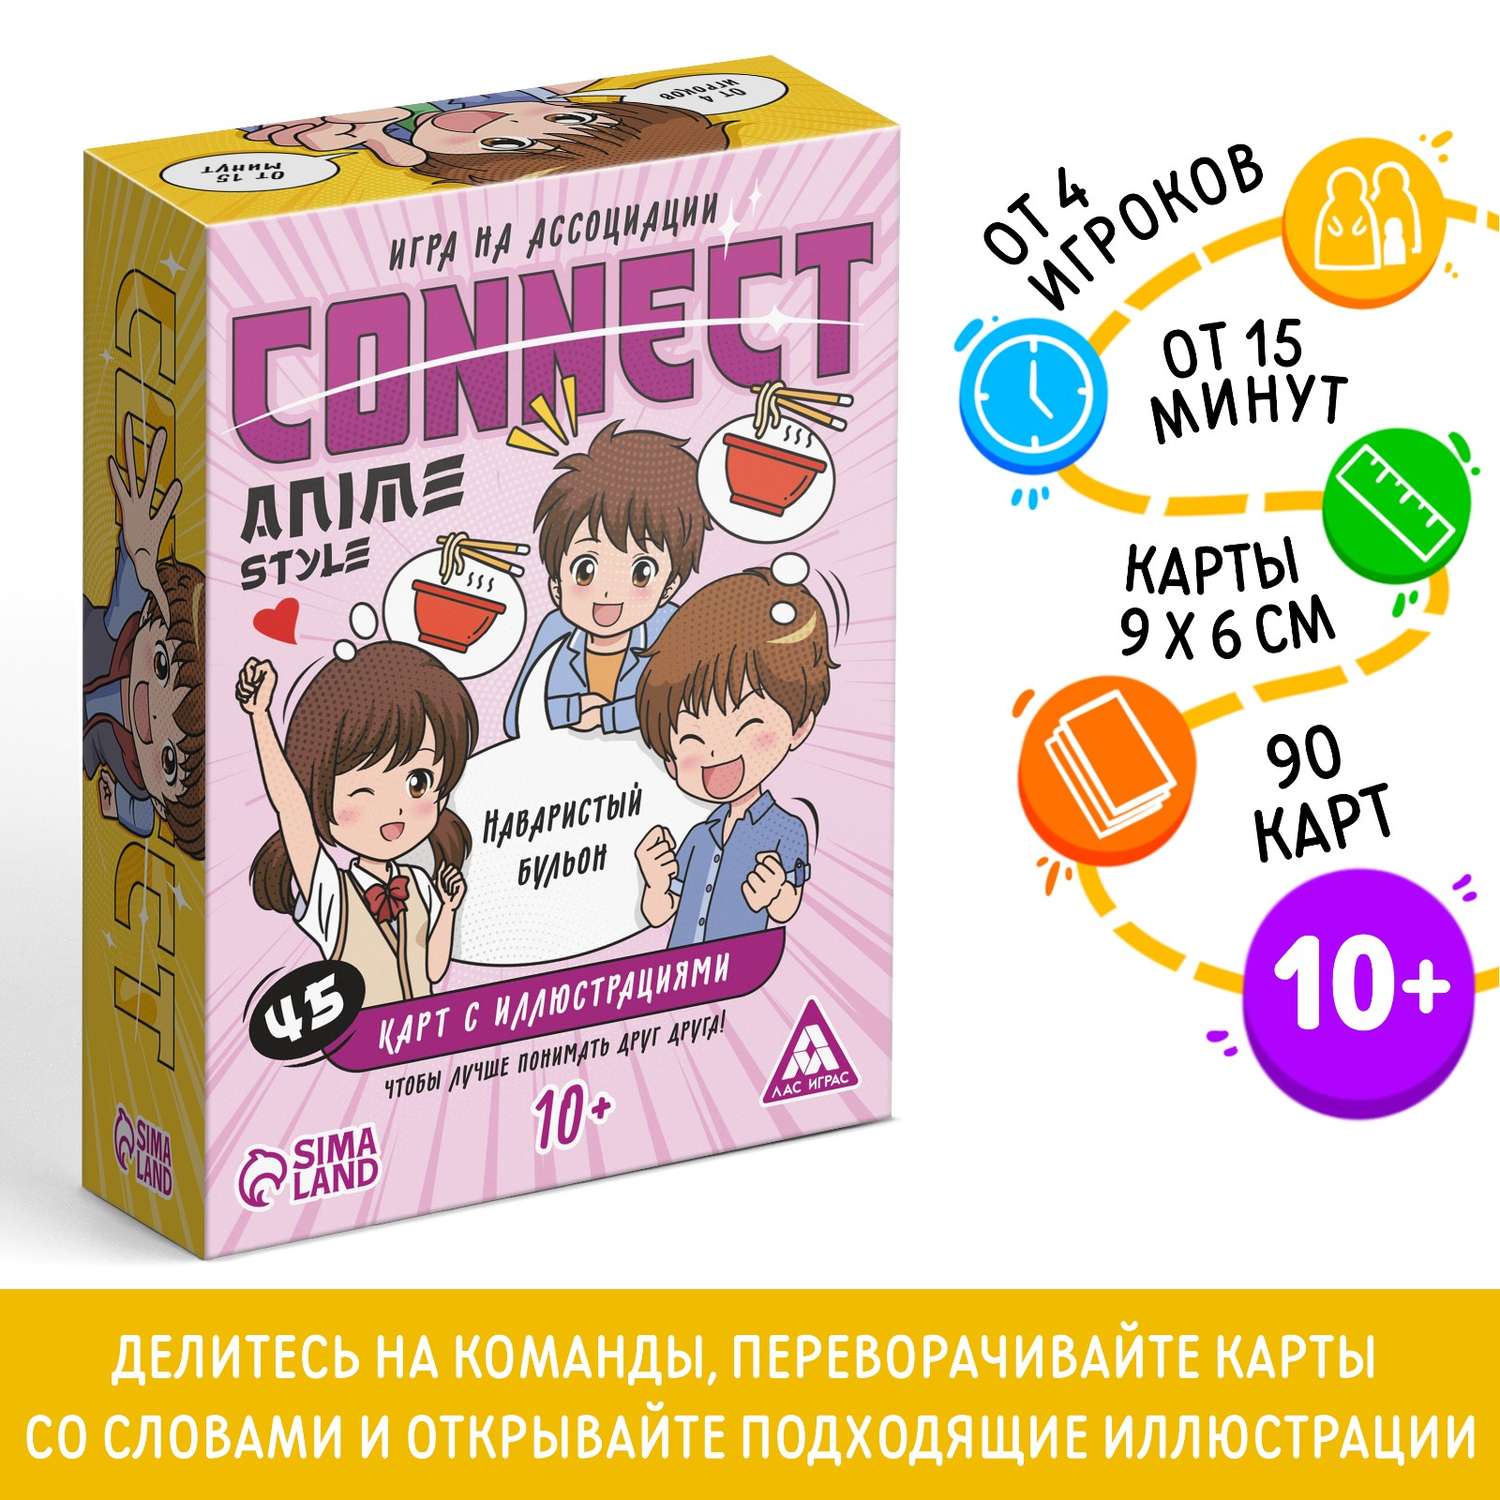 Настольная игра на ассоциации Лас Играс «Connect. Anime style» 100 карт 10+ - фото 2